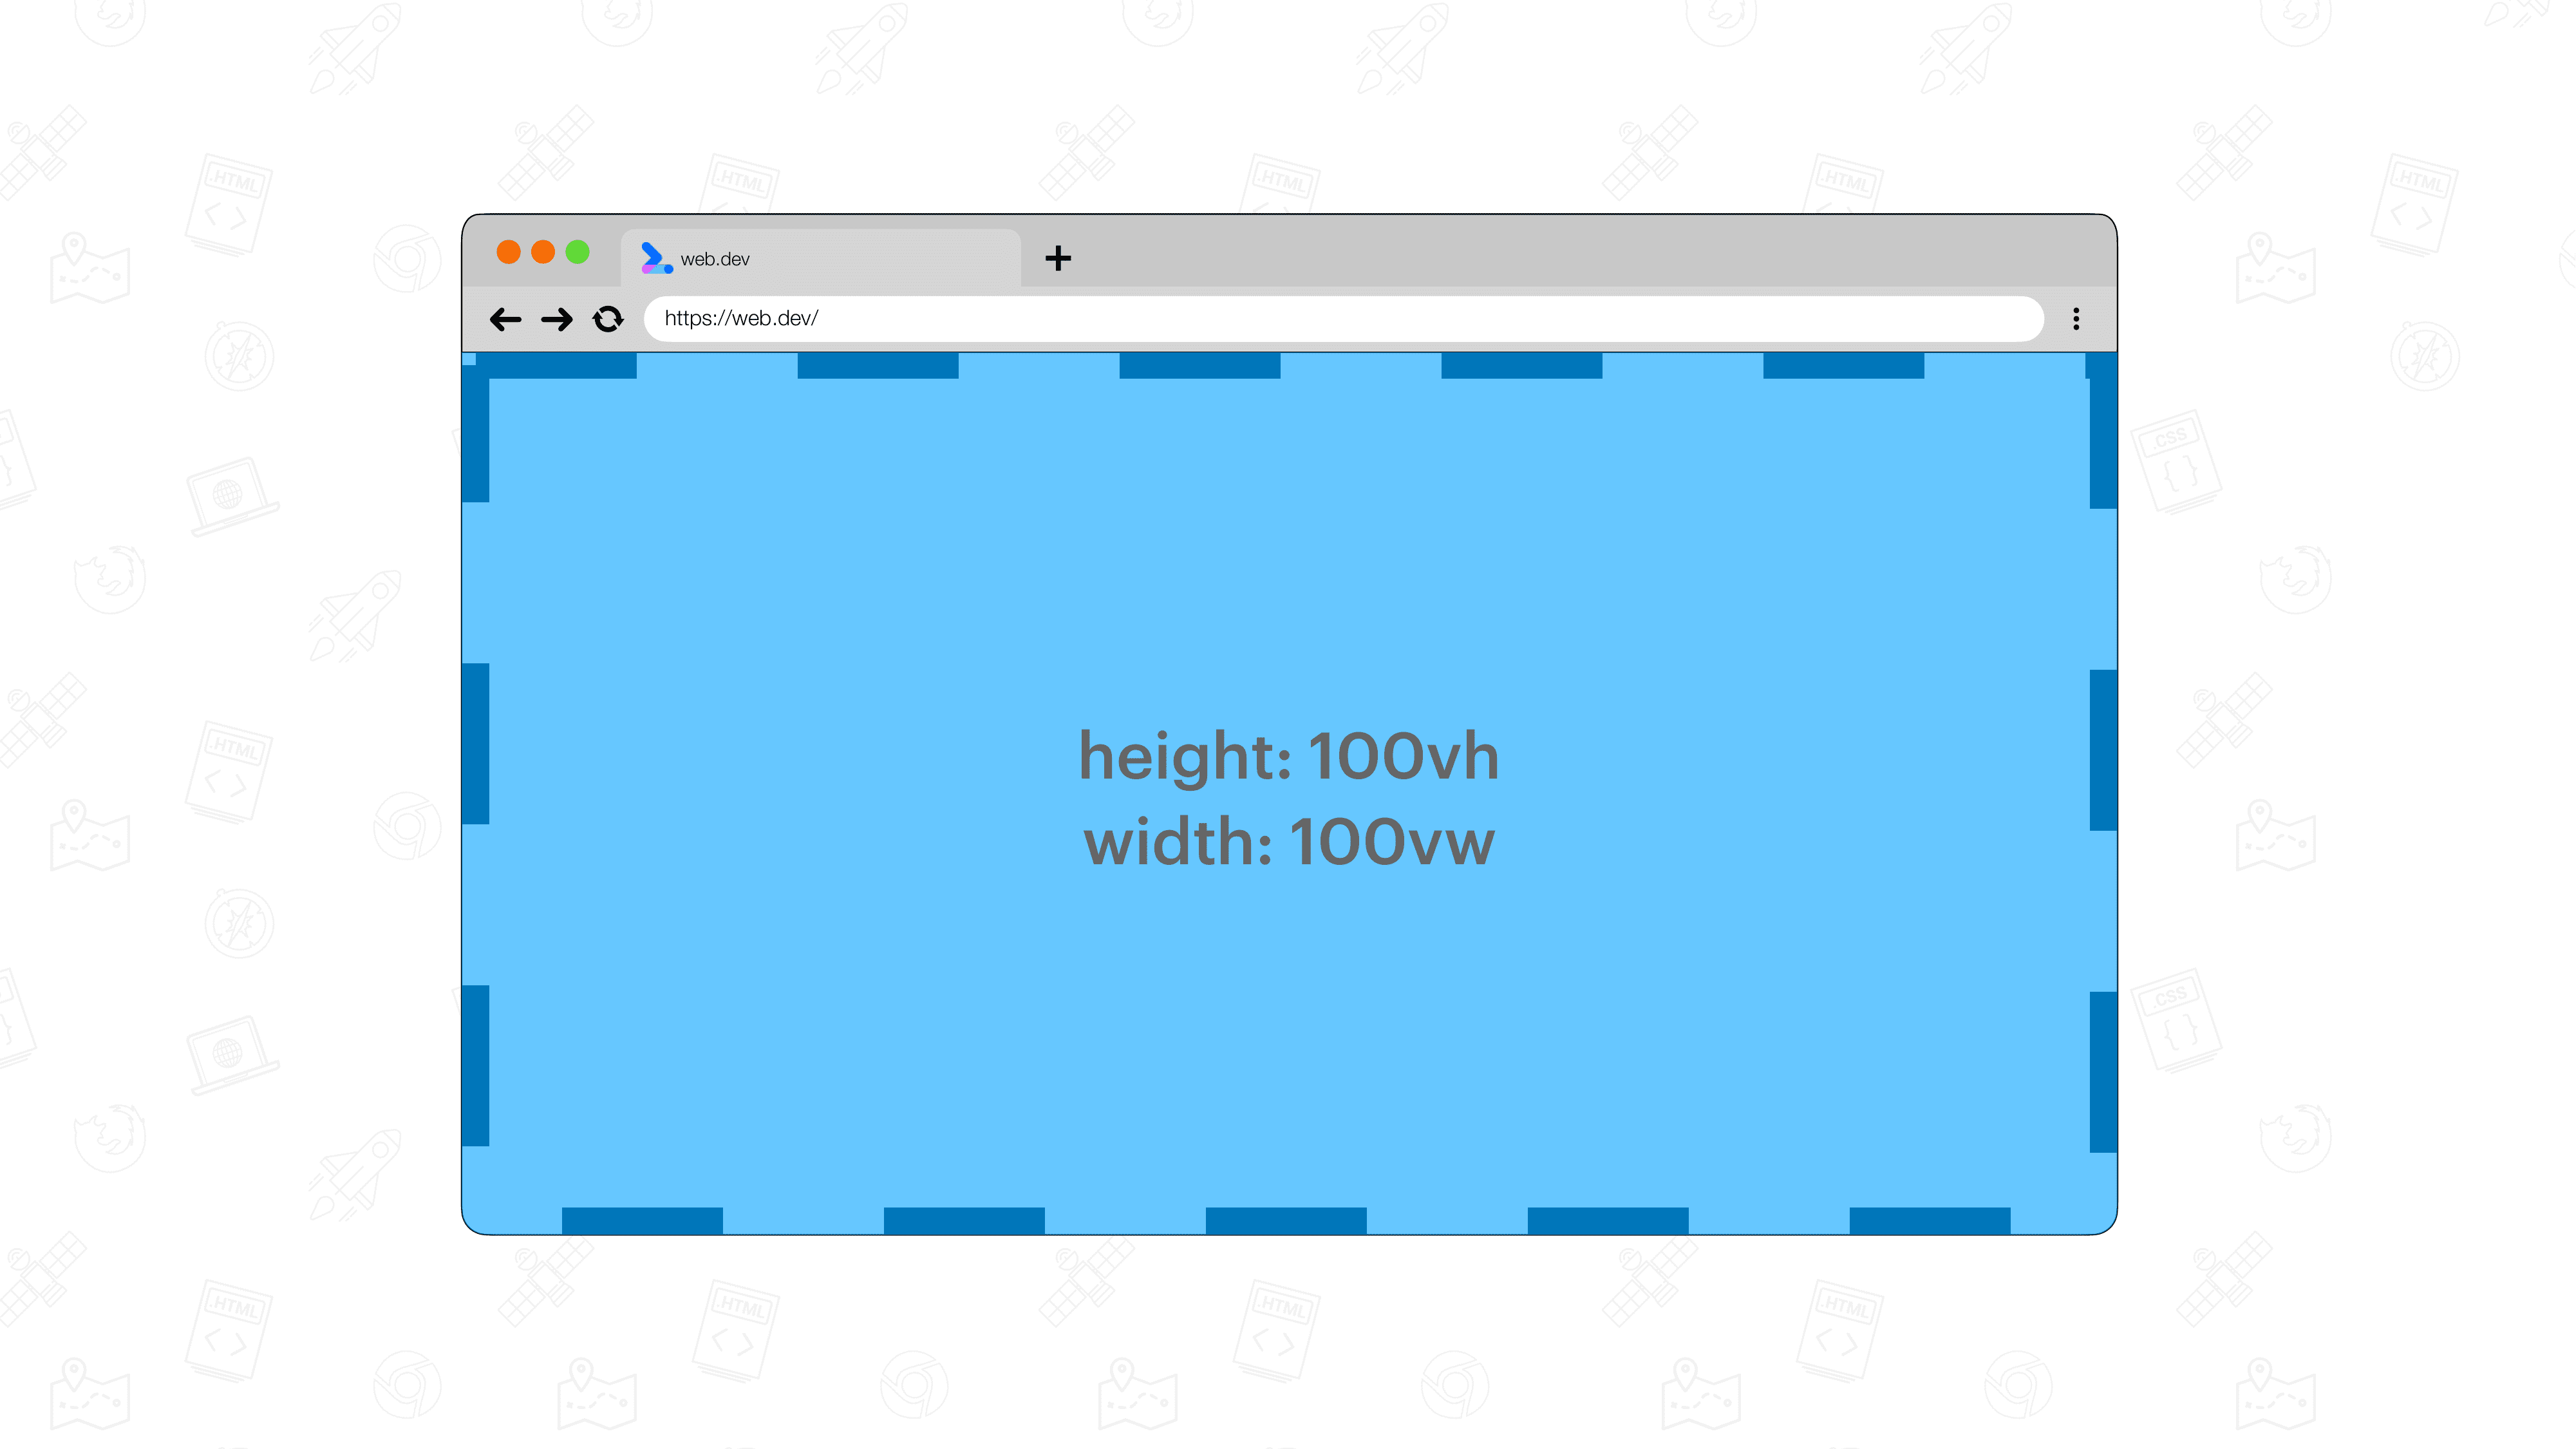 Um elemento azul-claro definido como 100 vw por 100 vh, cobrindo toda a janela de visualização. A própria janela de visualização é indicada por uma borda tracejada azul.